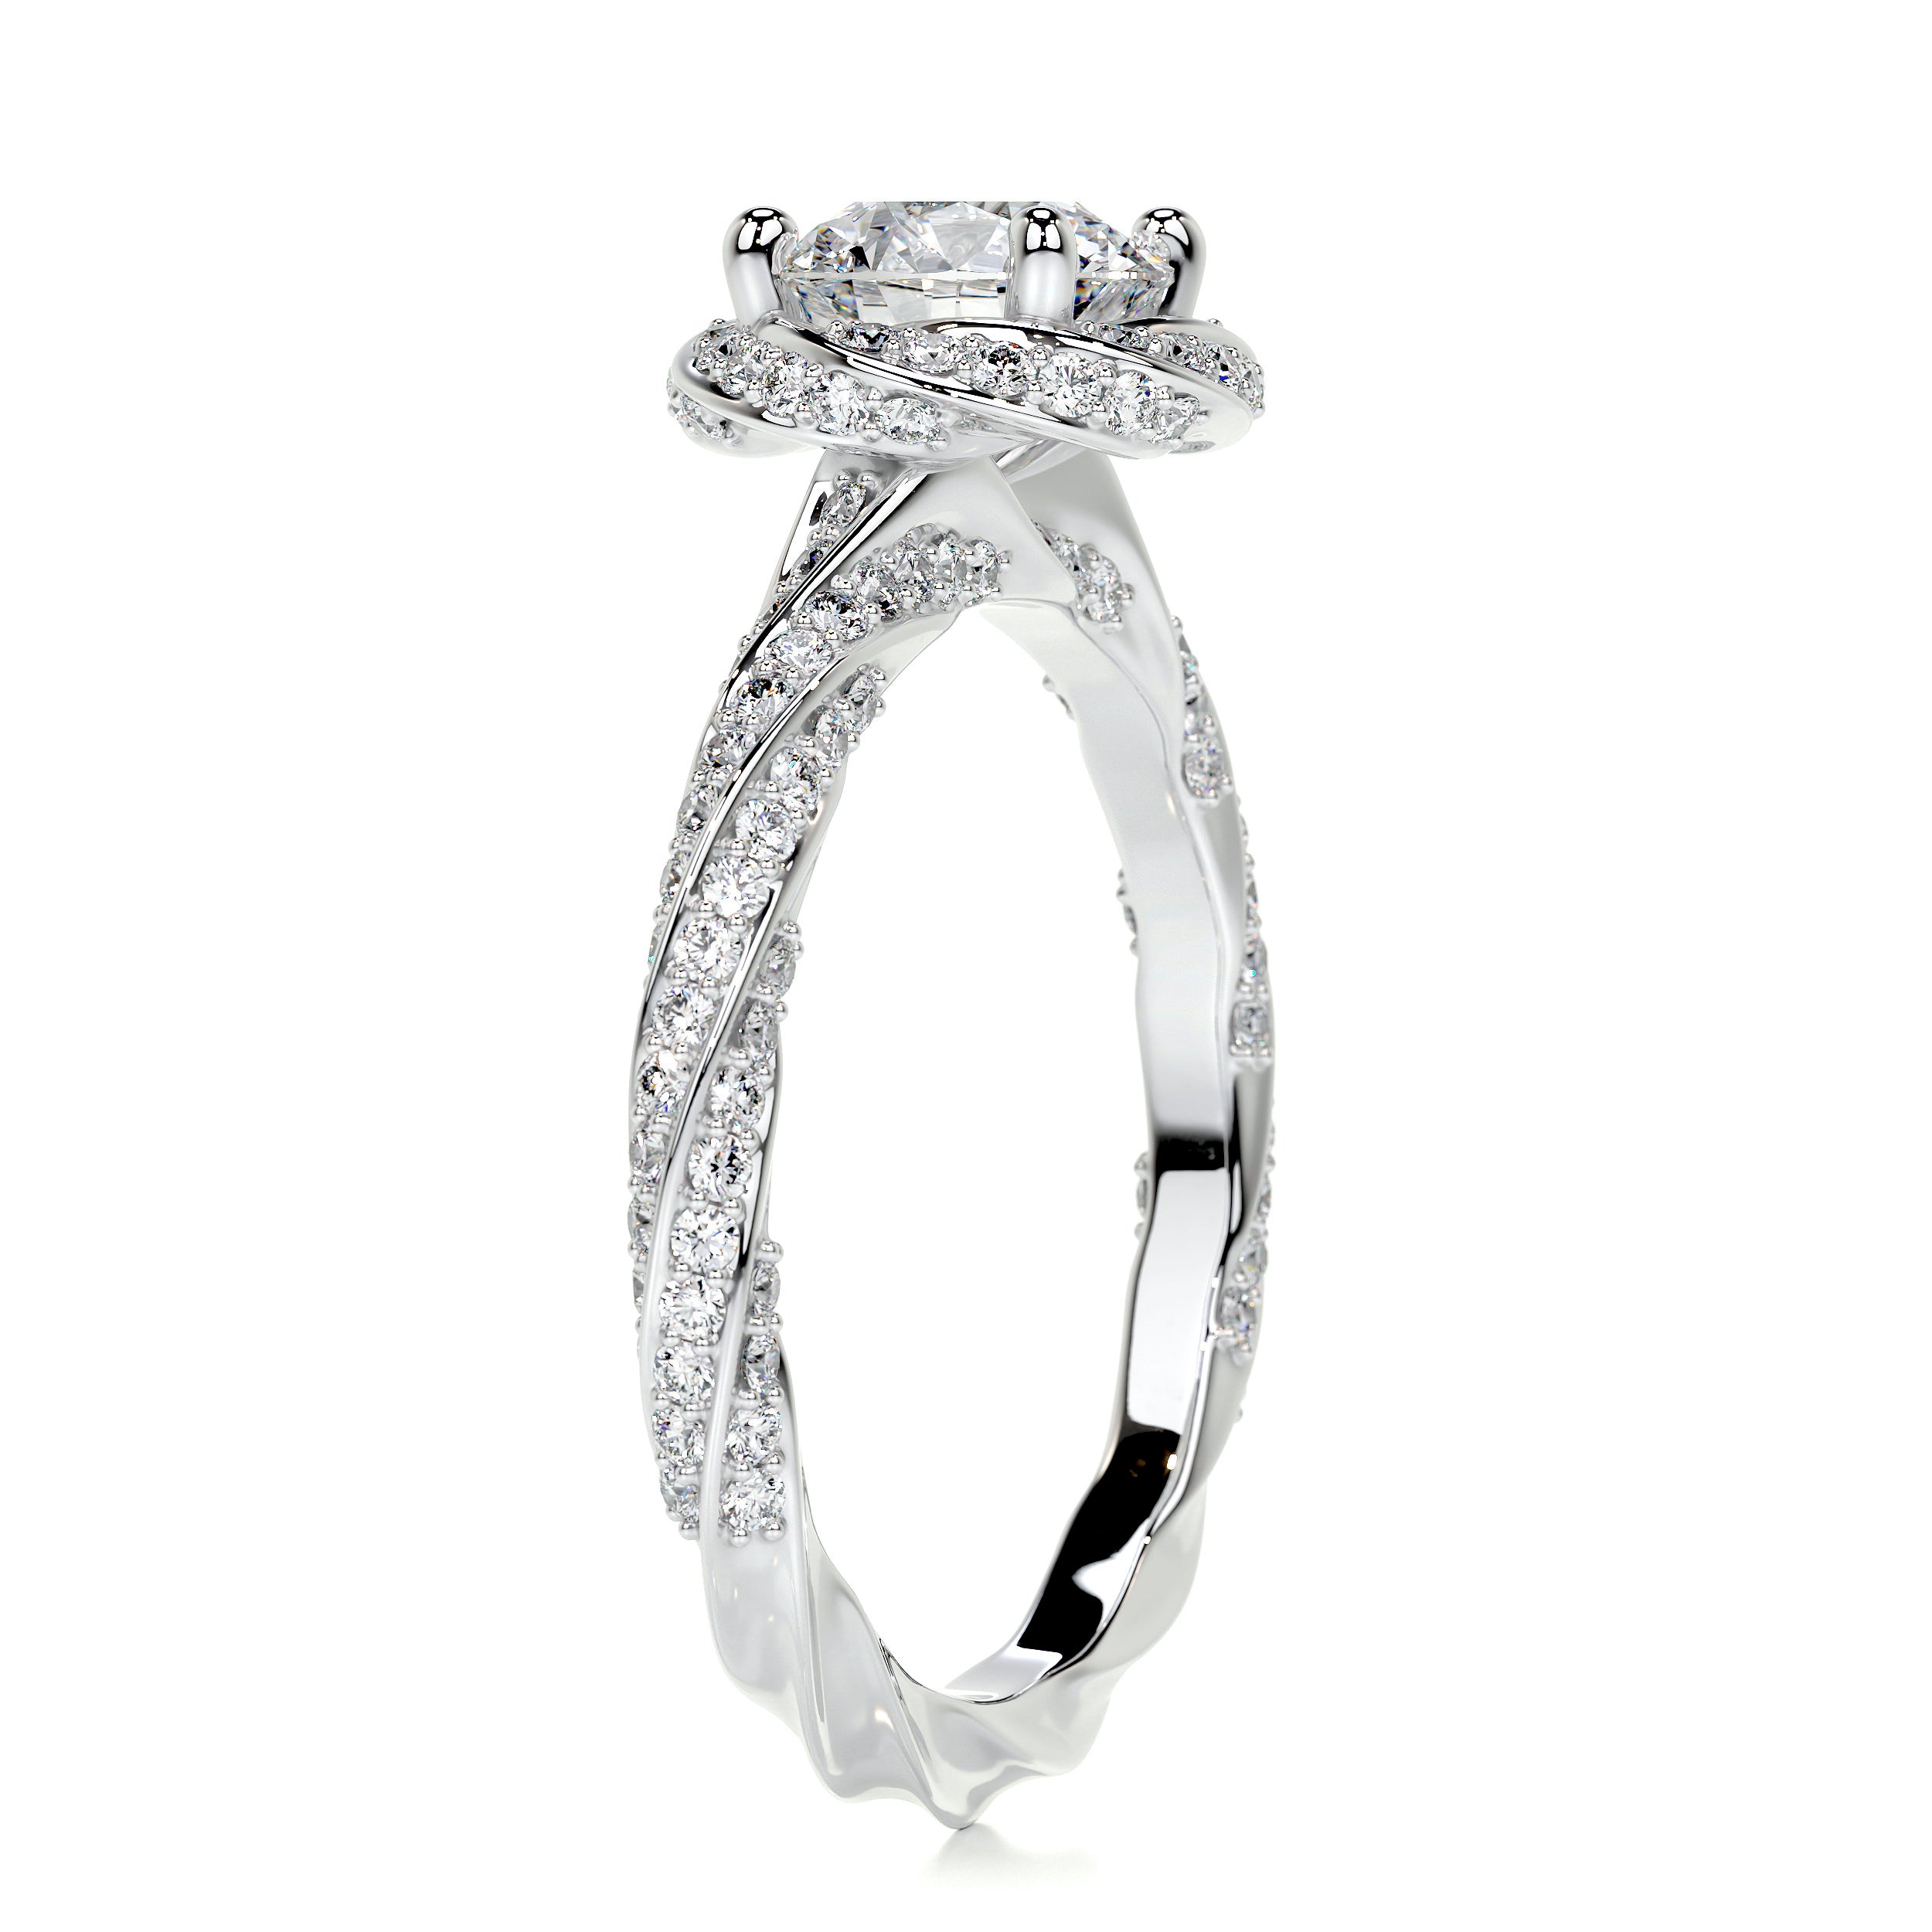 Joanne Diamond Engagement Ring -14K White Gold